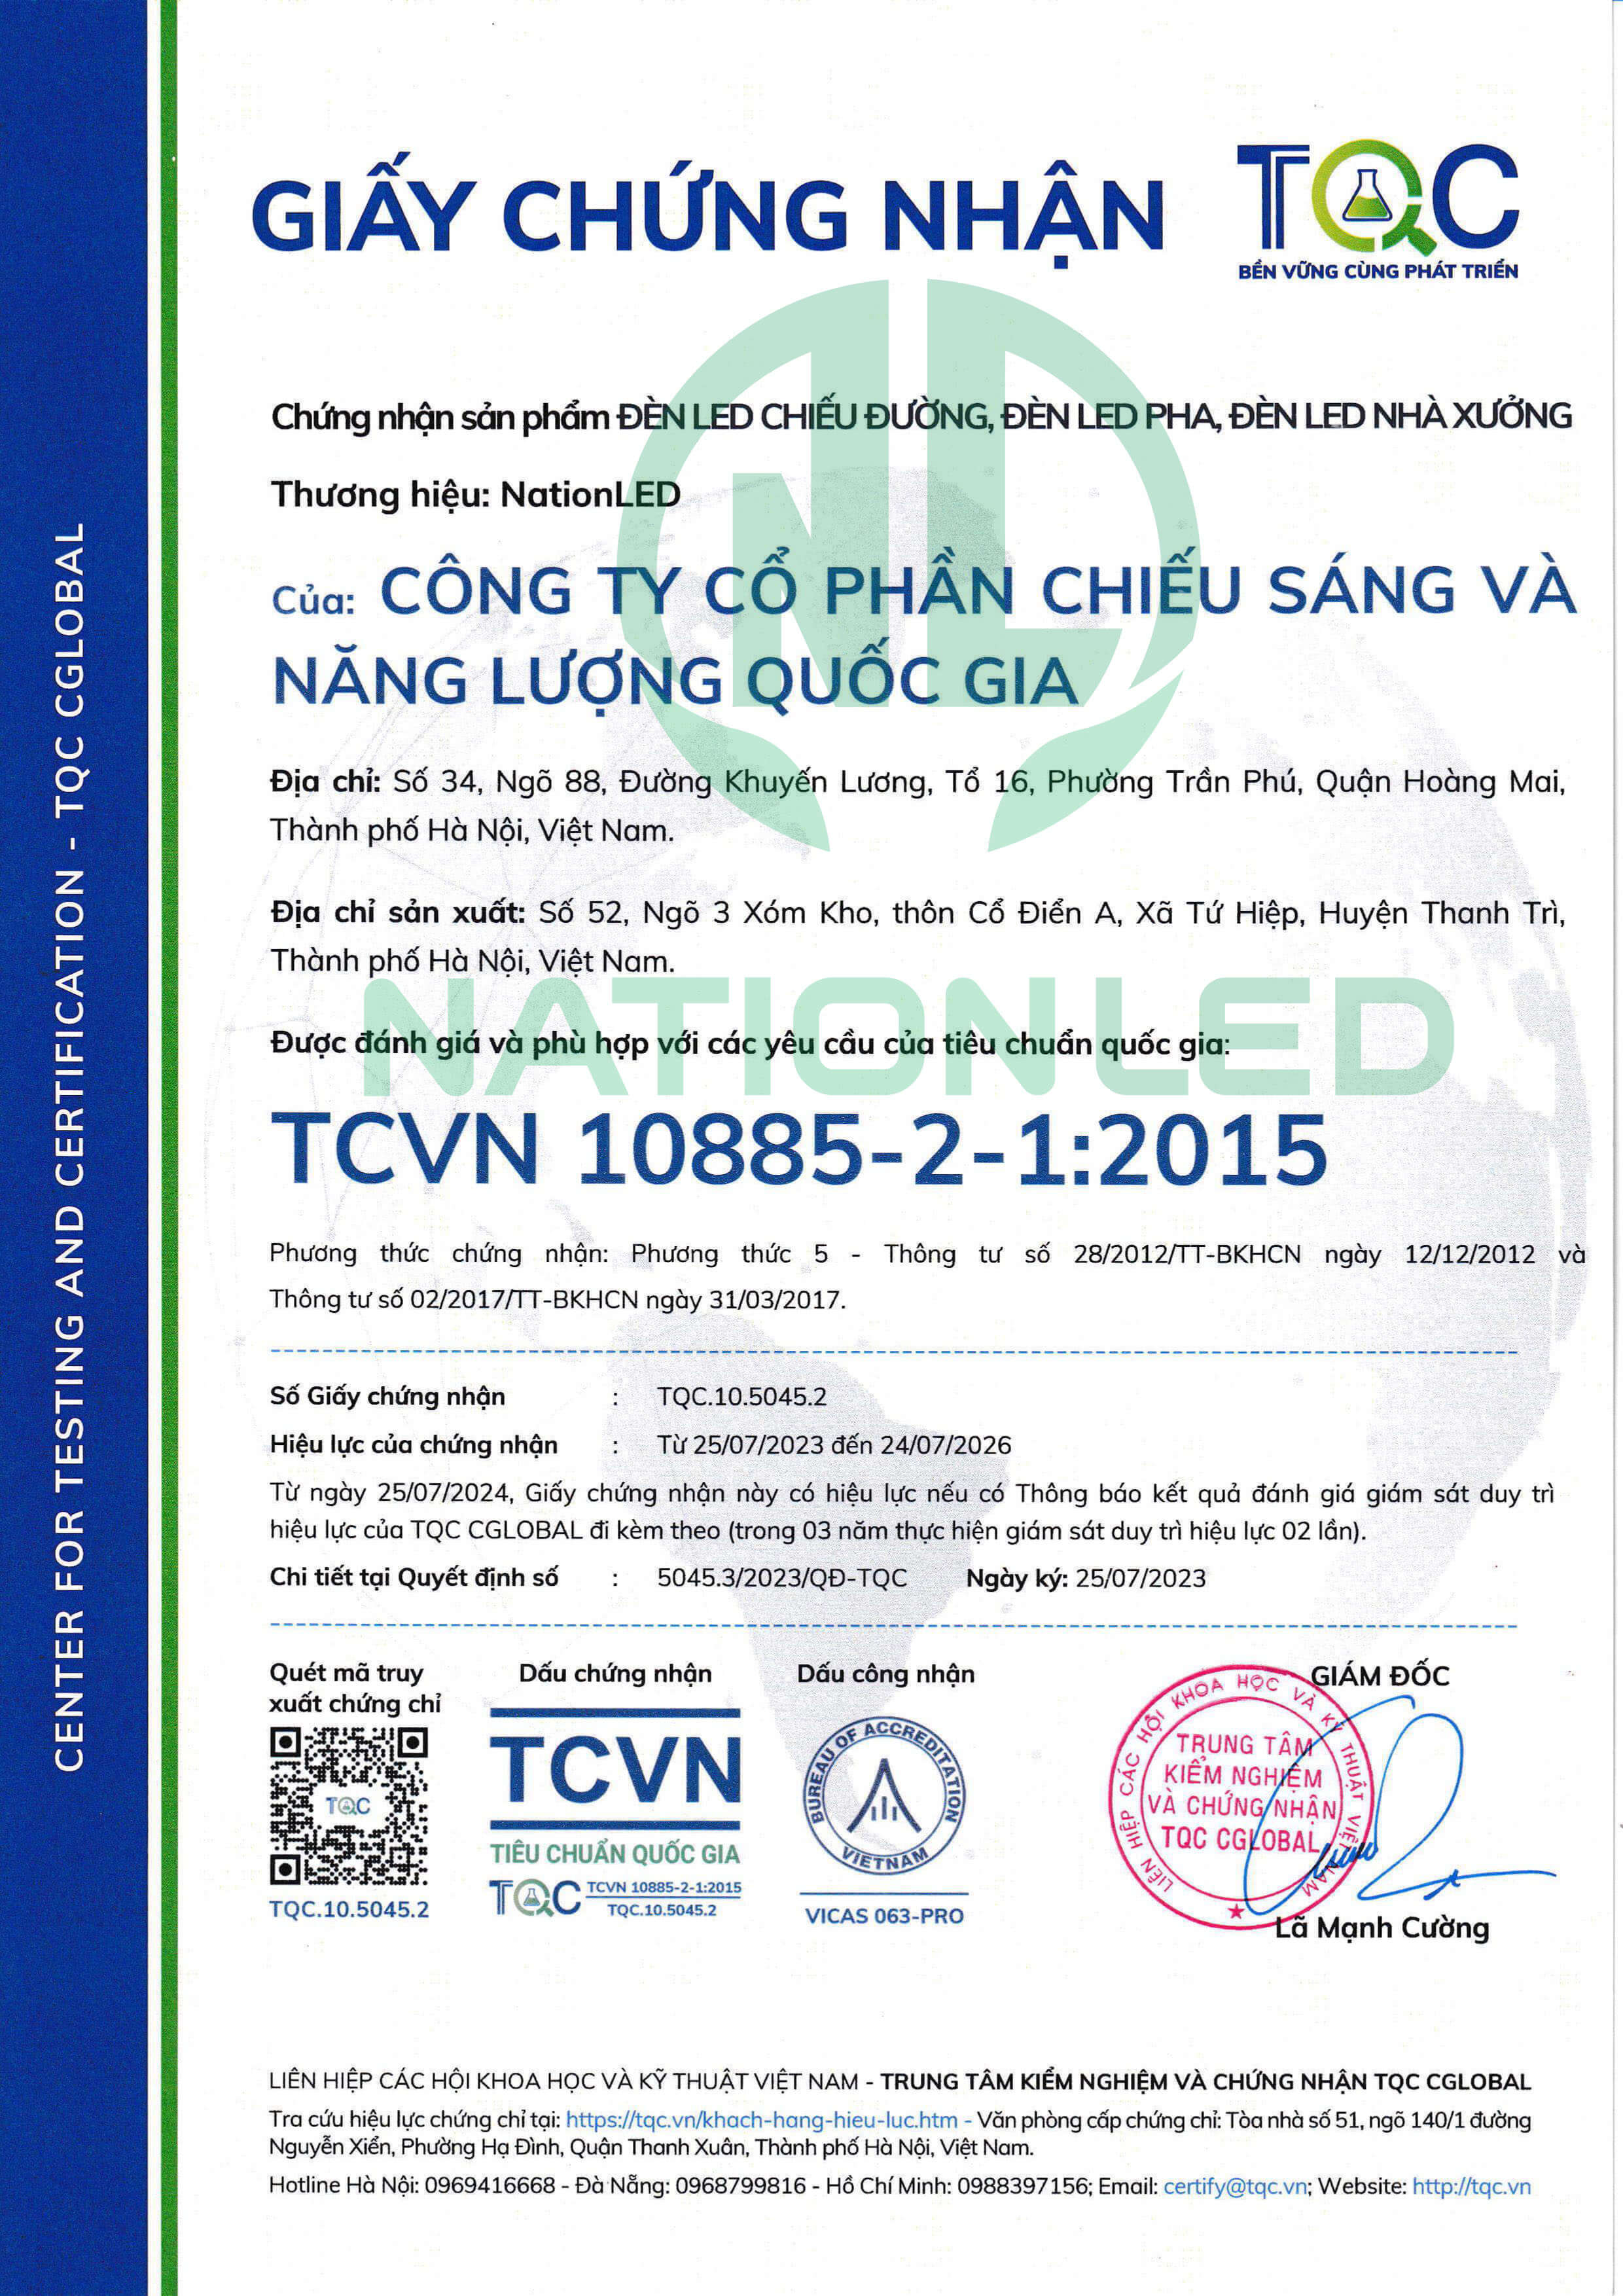 TCVN 1088-2-1:2015